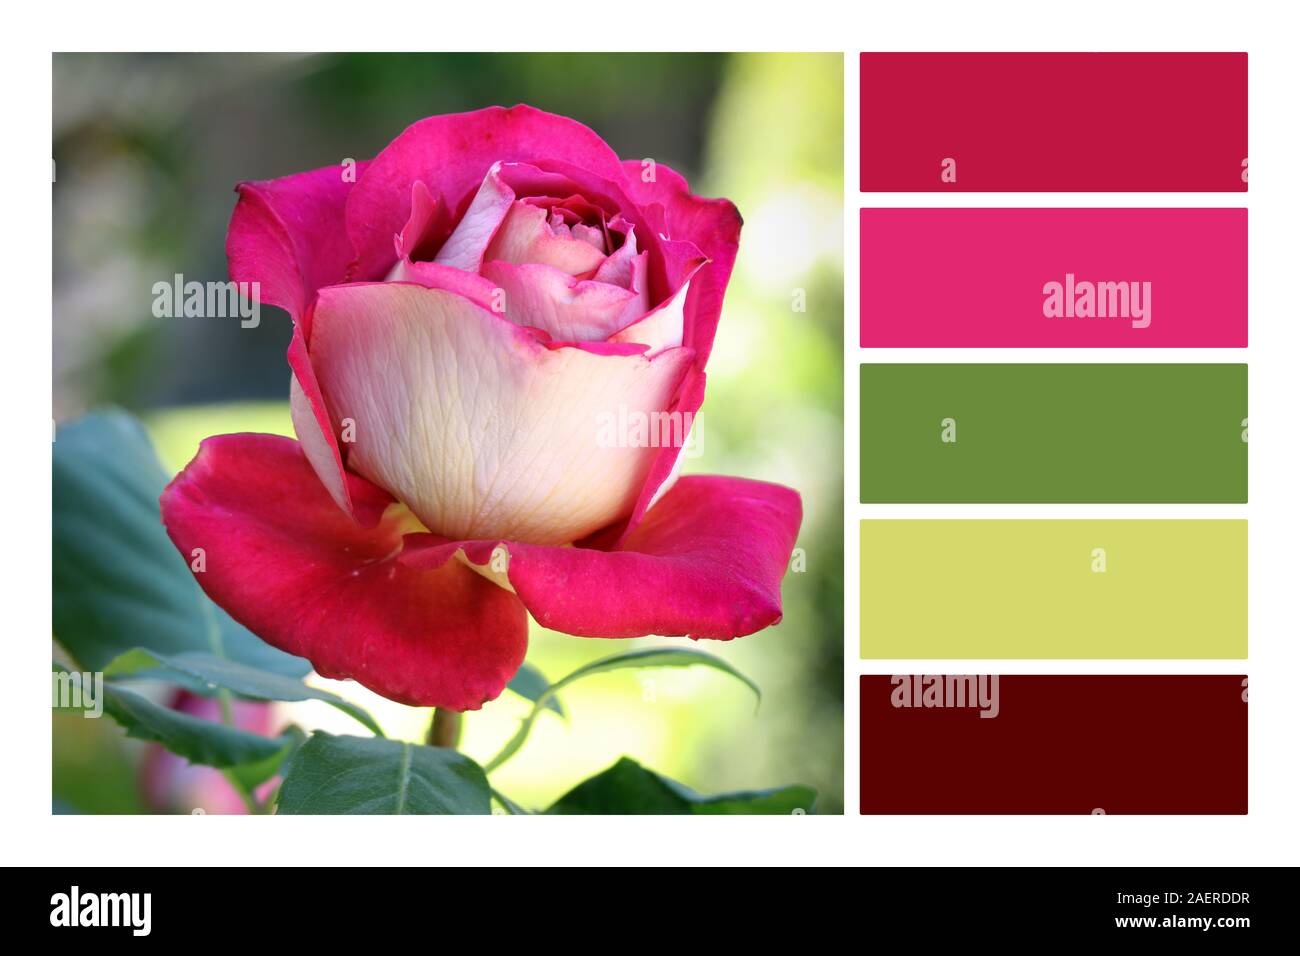 Schöne rosa Rose Blume auf verblasste verschwommen grünen Hintergrund in einer Farbpalette Farbpalette. Stockfoto